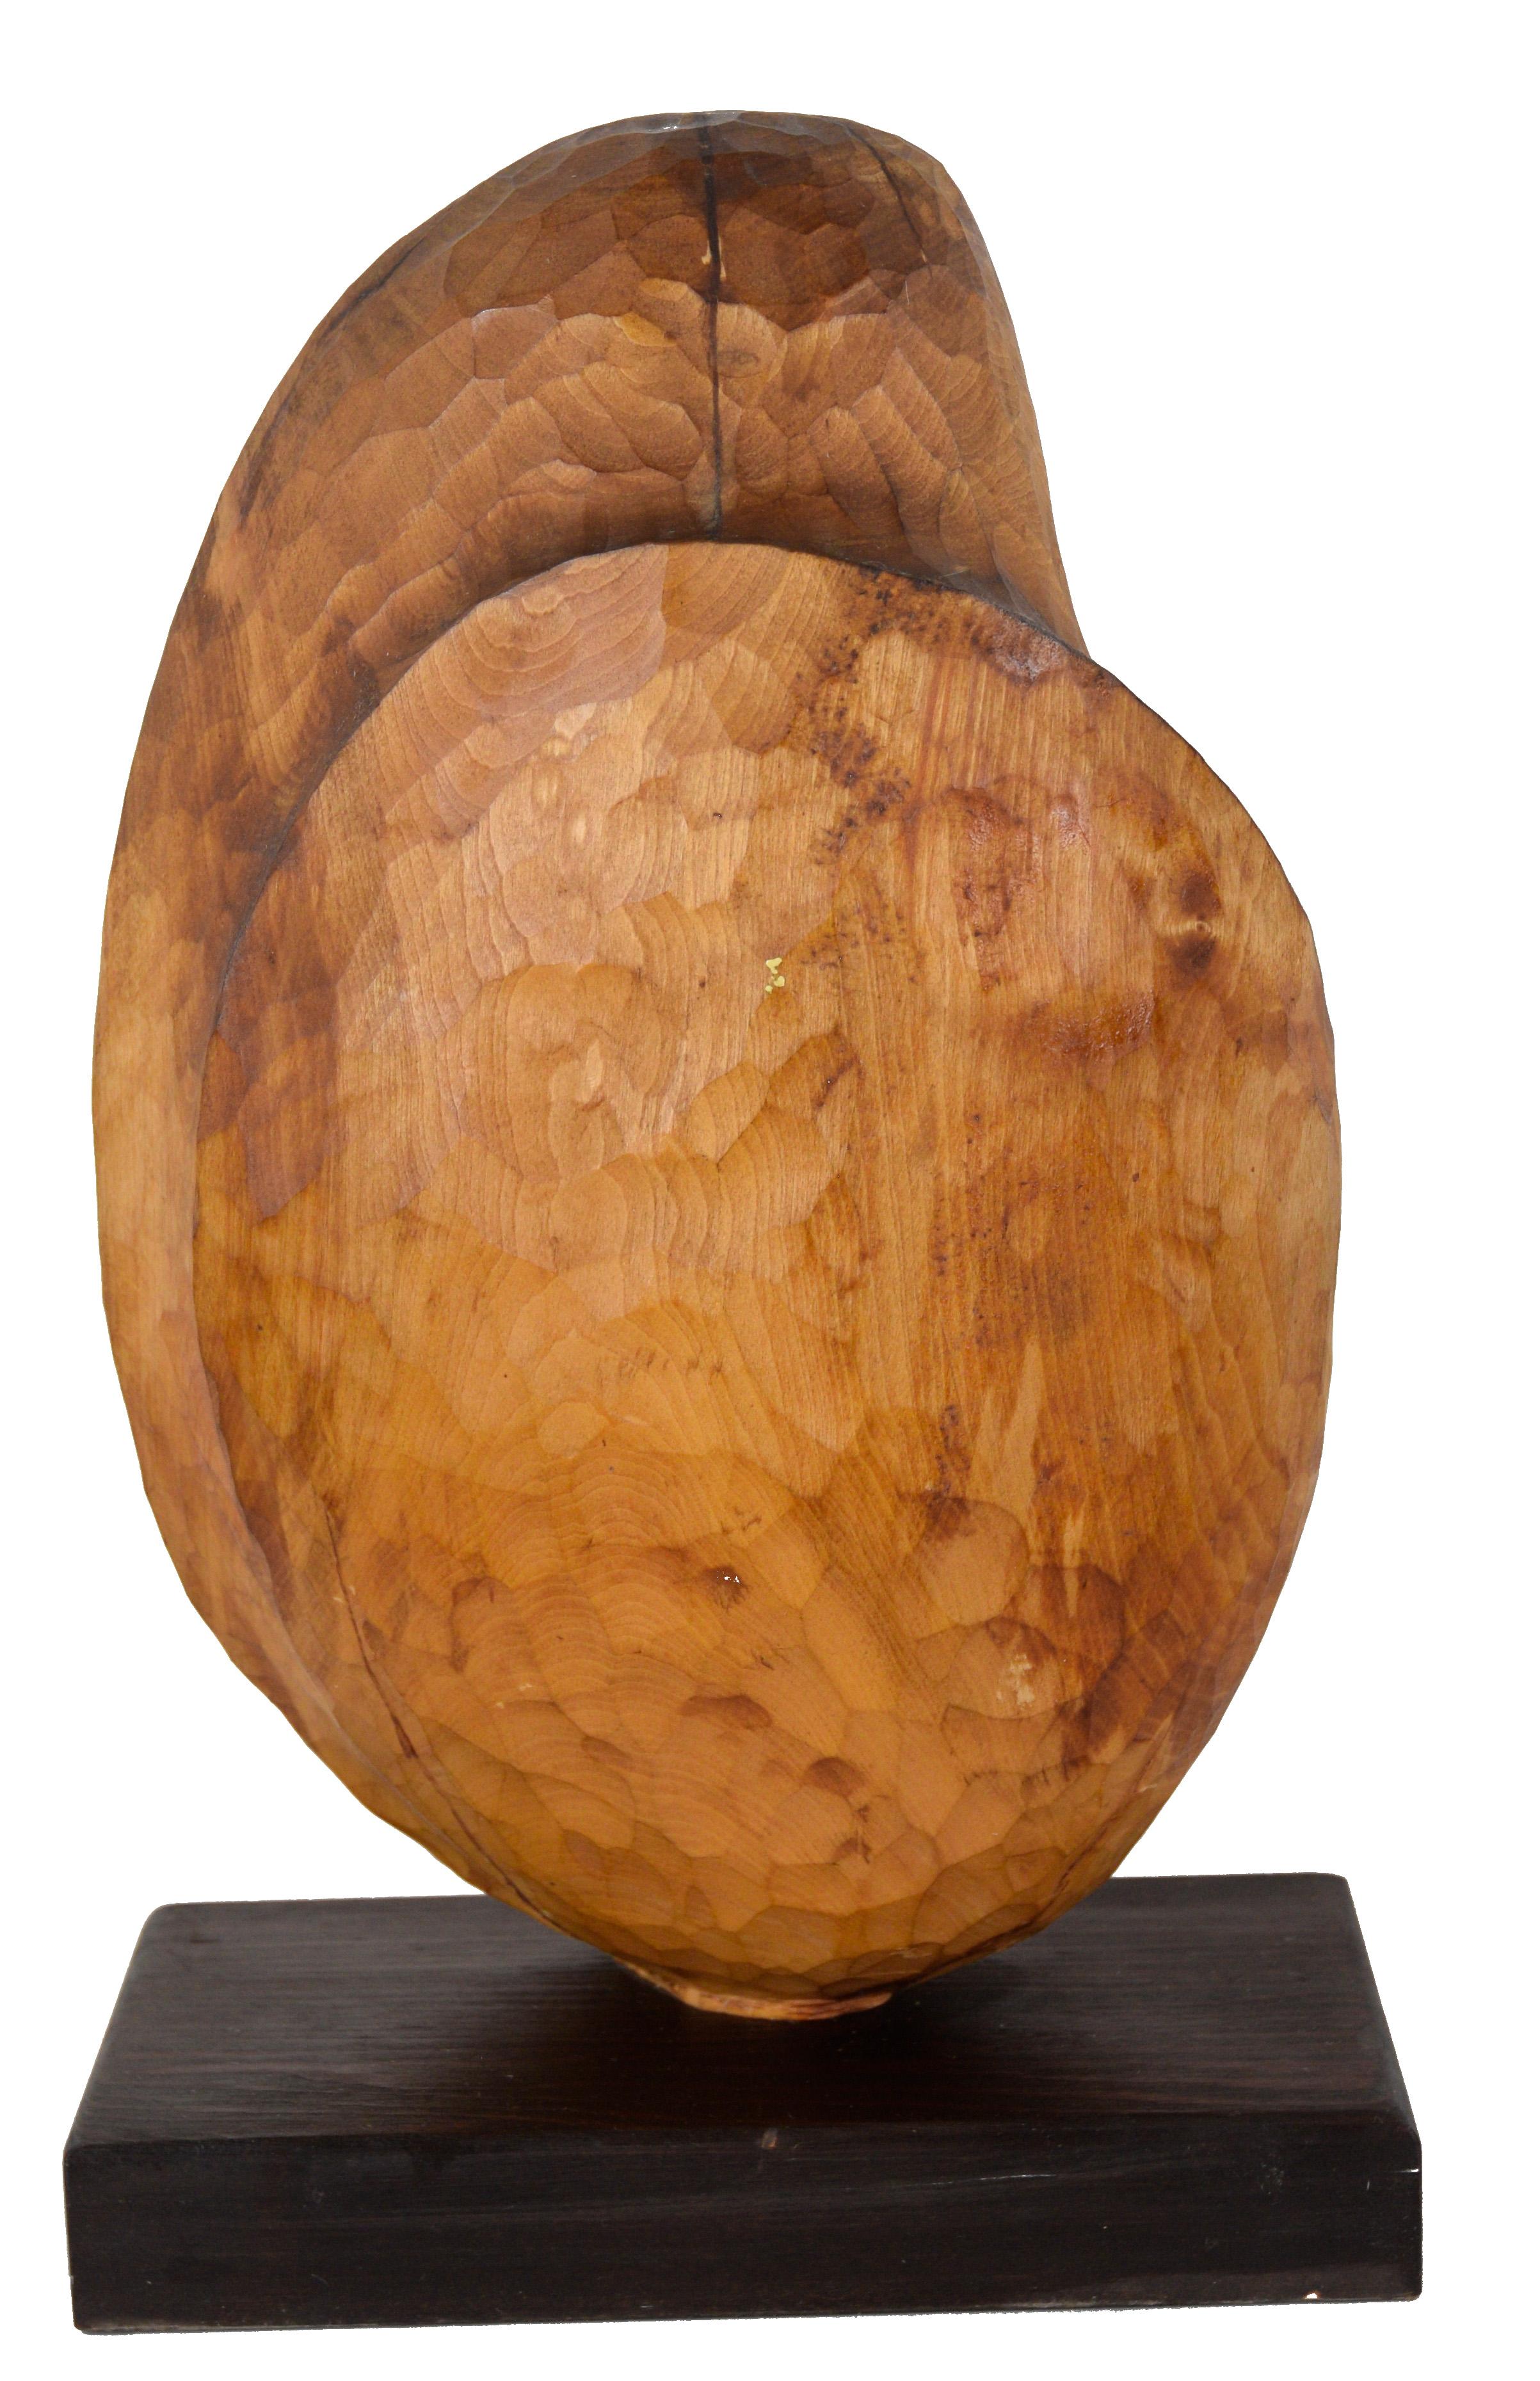 Sculpture figurative en bois sculptée à la main - Juneau, Alaska 1984

Sculpture en bois sculptée à la main, présentée sur un socle en bois foncé. La sculpture est quelque peu figurative, mais plutôt abstraite. La pièce présente une proportionnalité